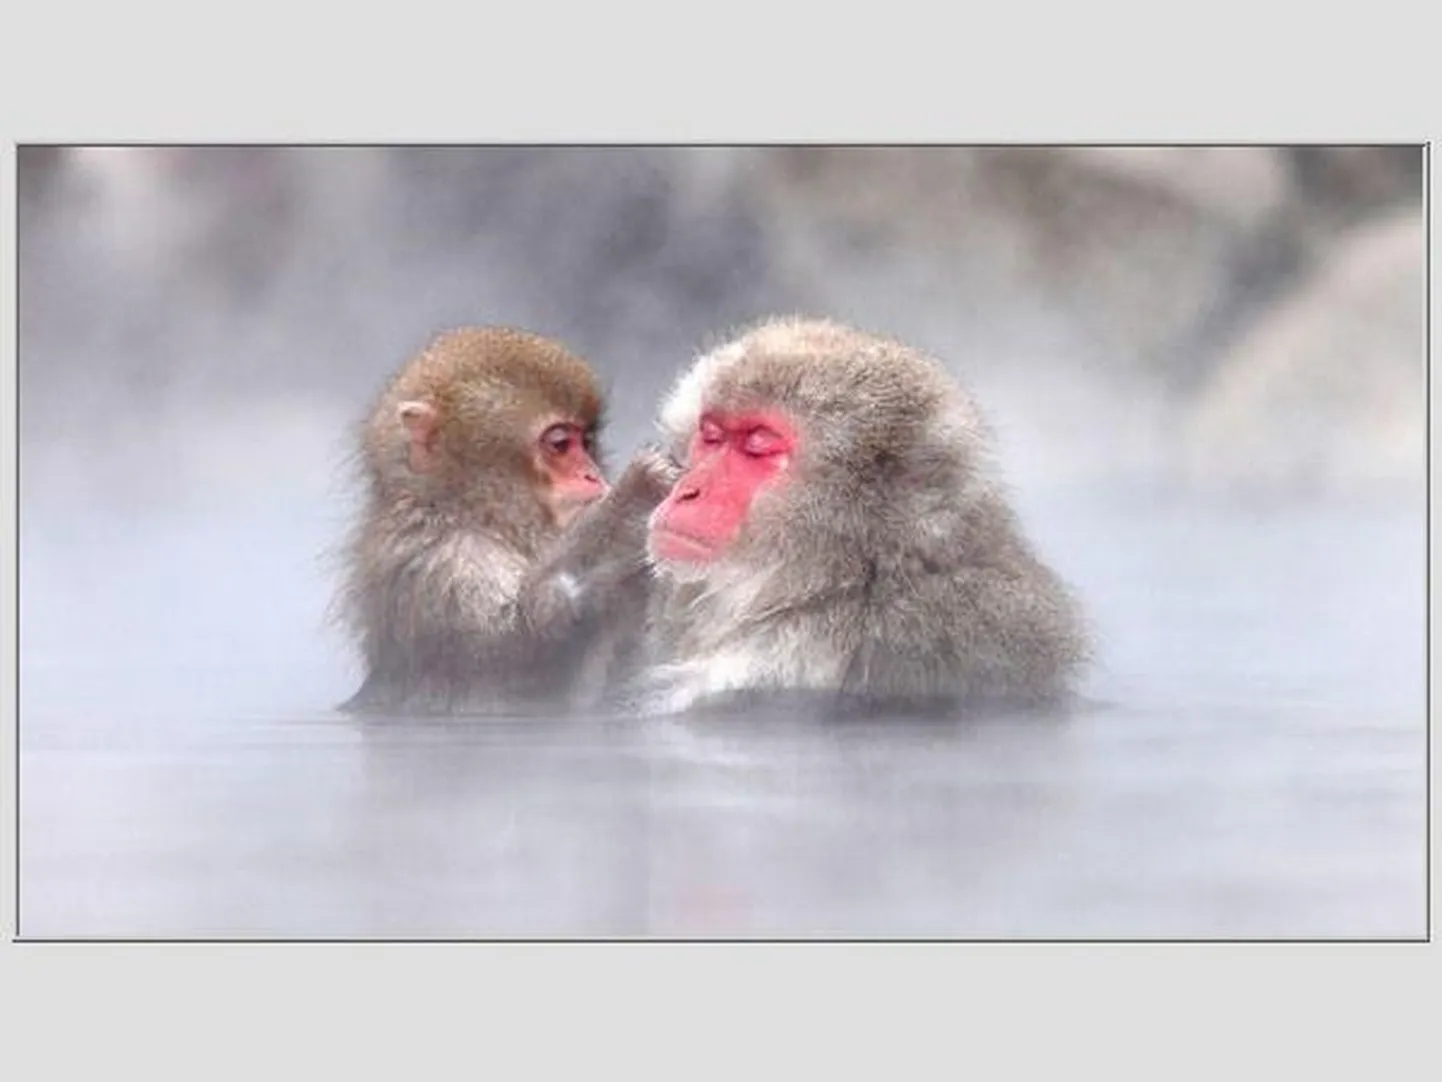 Jaapani makaagid Naganos kuumaveeallikas külma eest peidus ja "patsutamiskultuuriga" tegelemas. 